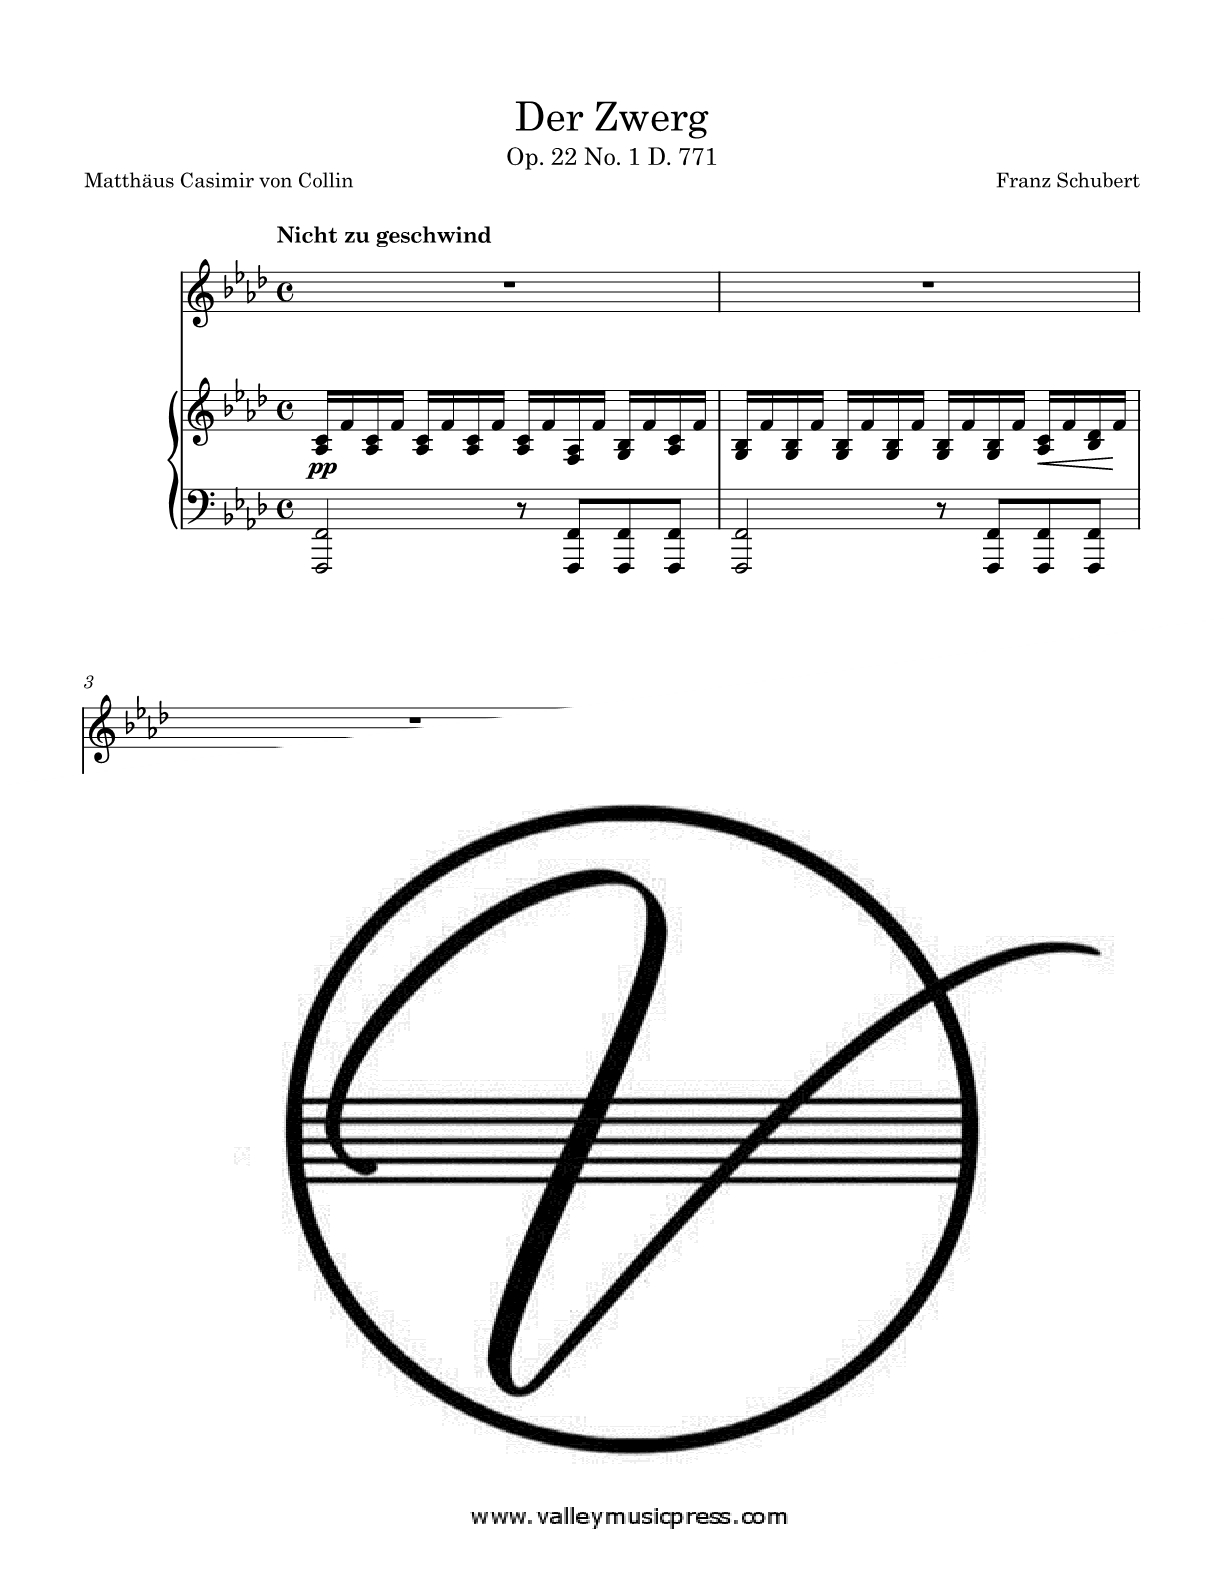 Schubert - Der Zwerg D. 771 Op. 22 No. 1 (Voice)